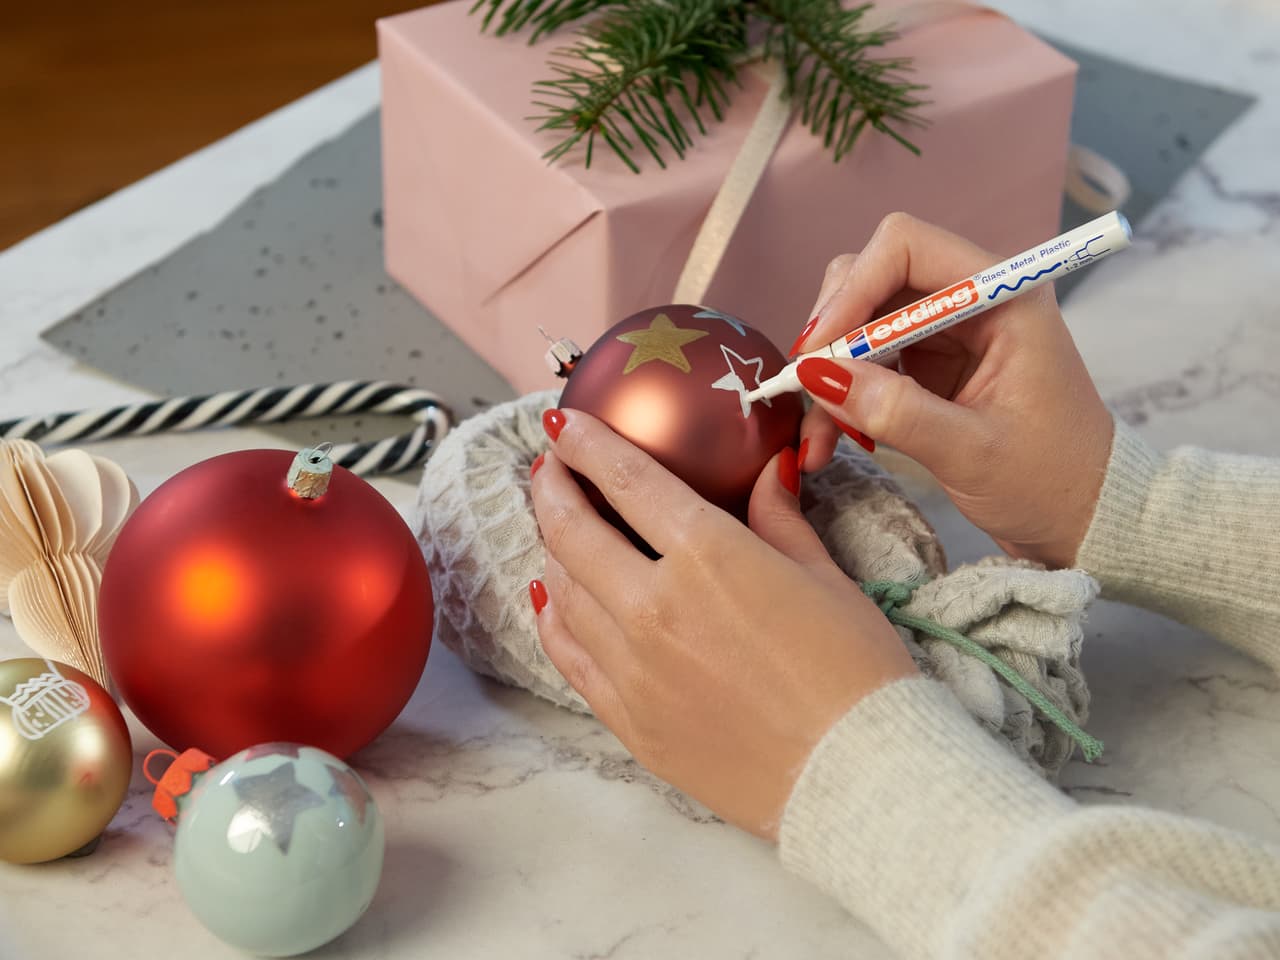 Für eine persönliche Note: Hände schreiben mit einem Glanzlackmarker edding 751 sorgfältig eine Weihnachtsbotschaft auf eine rote Weihnachtskugel.